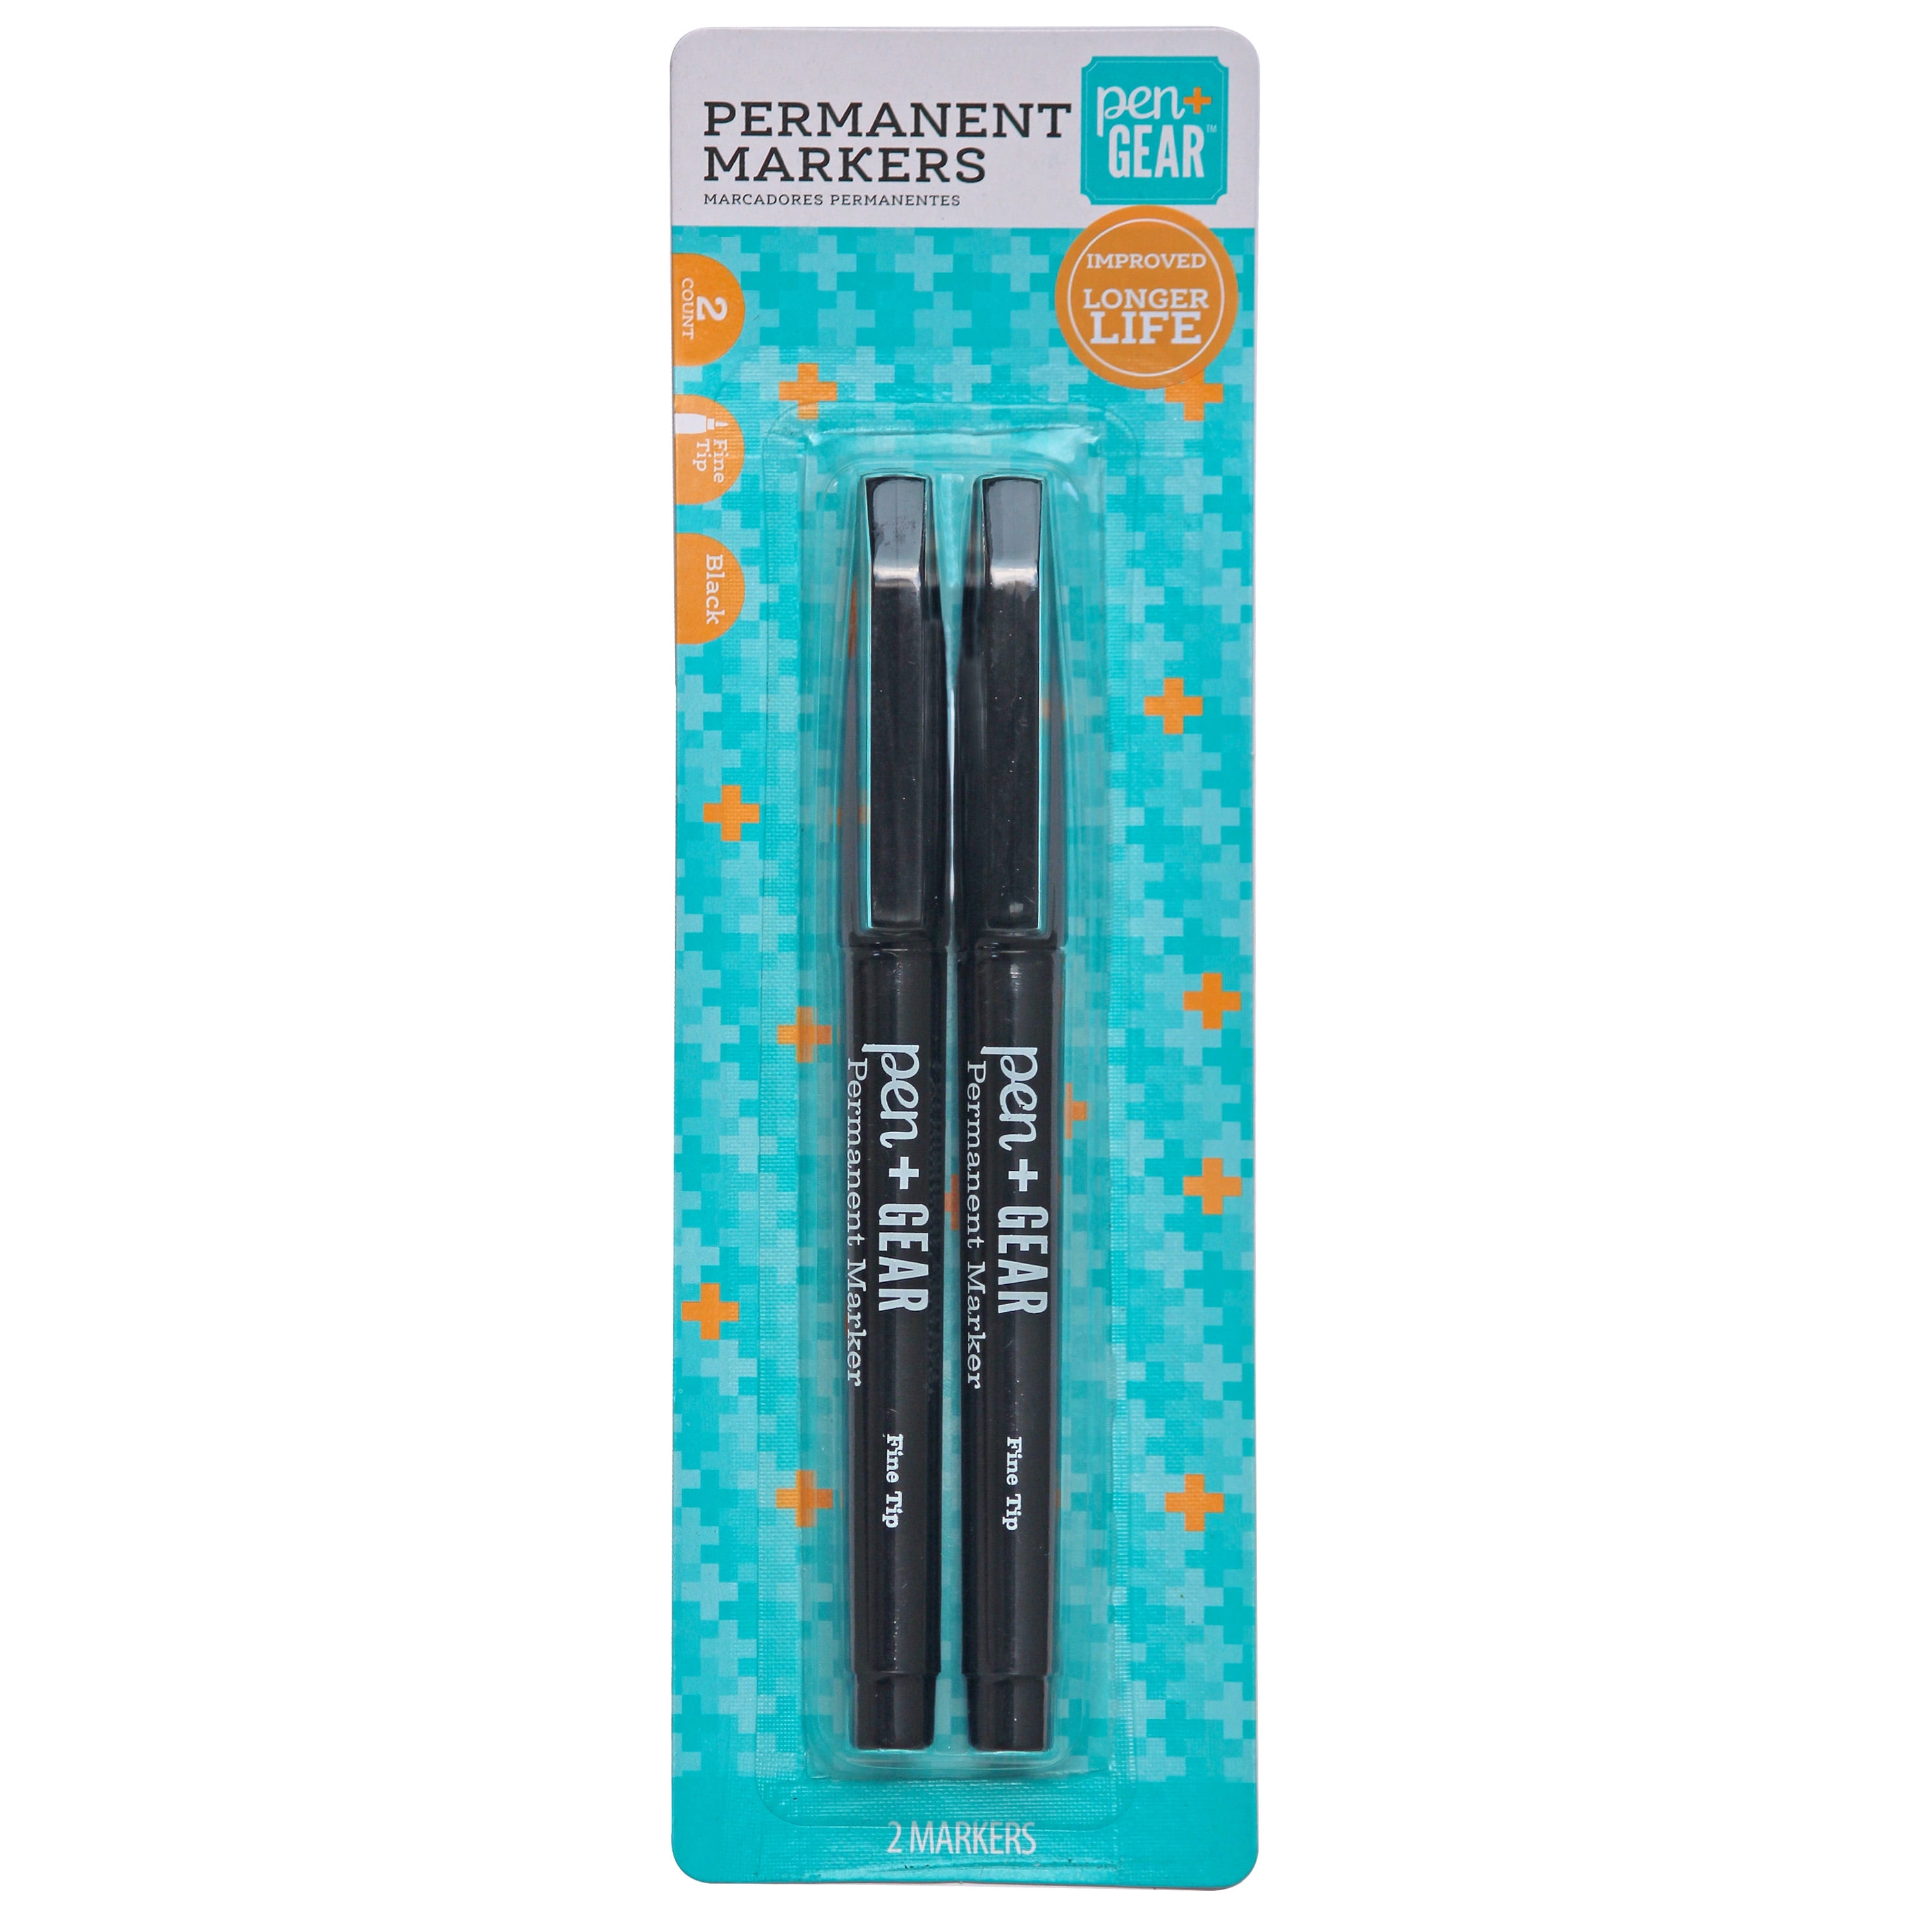 Pen+Gear Permanent Markers, Fine Point, Black Color, 2 Count